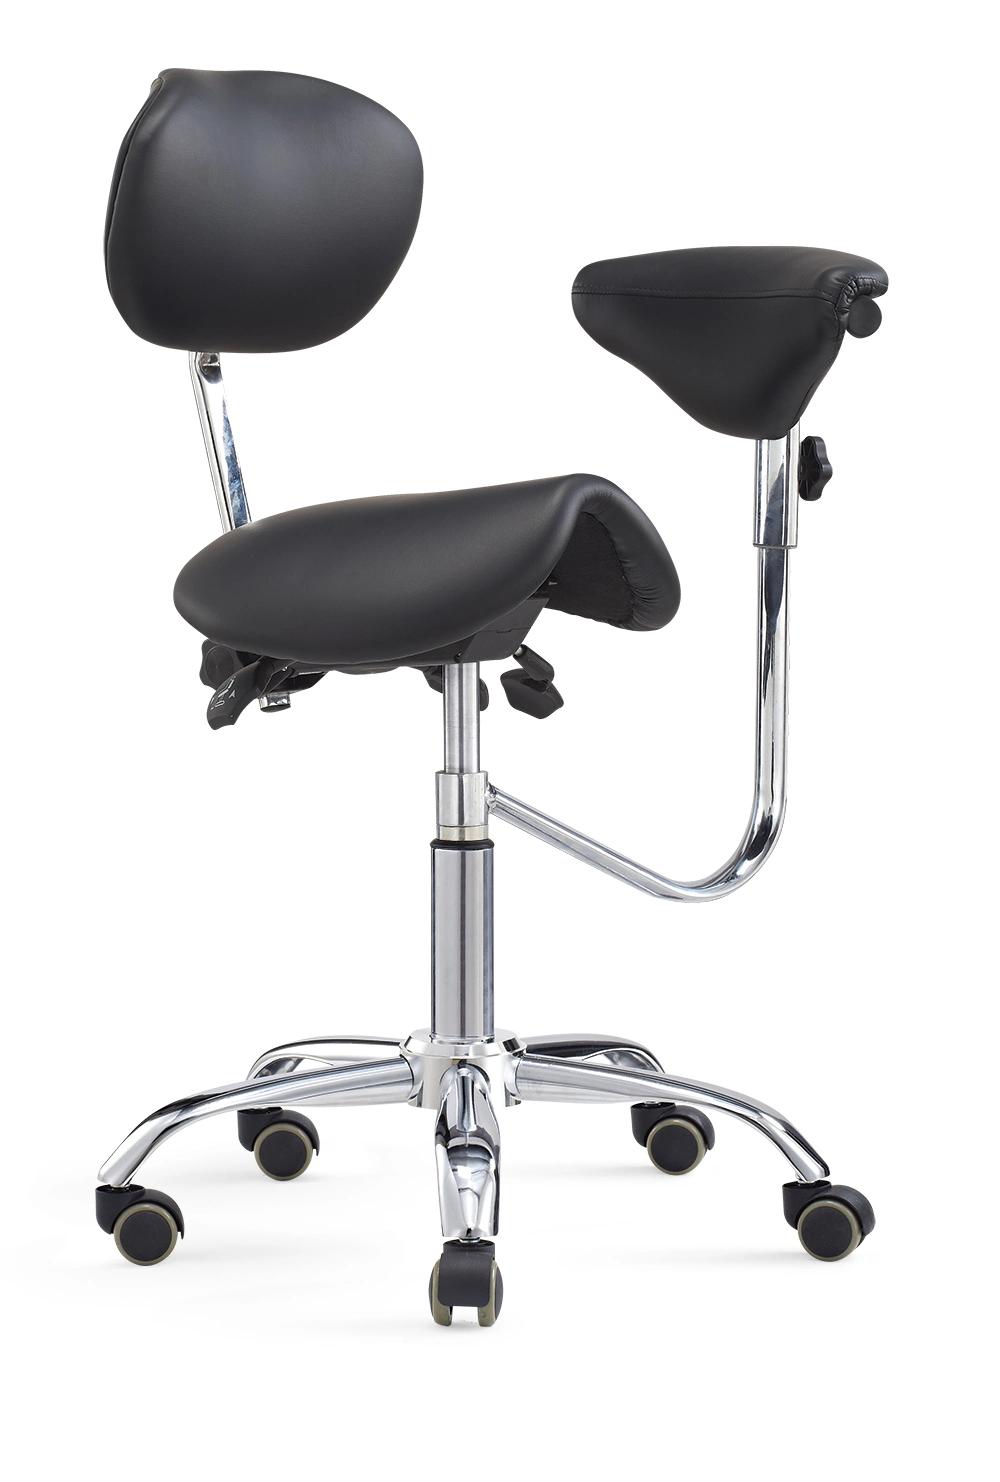 Ergonomic Saddle Seat Medical Chair Dental Assistant Stool with Adjustable Backrest Armrest